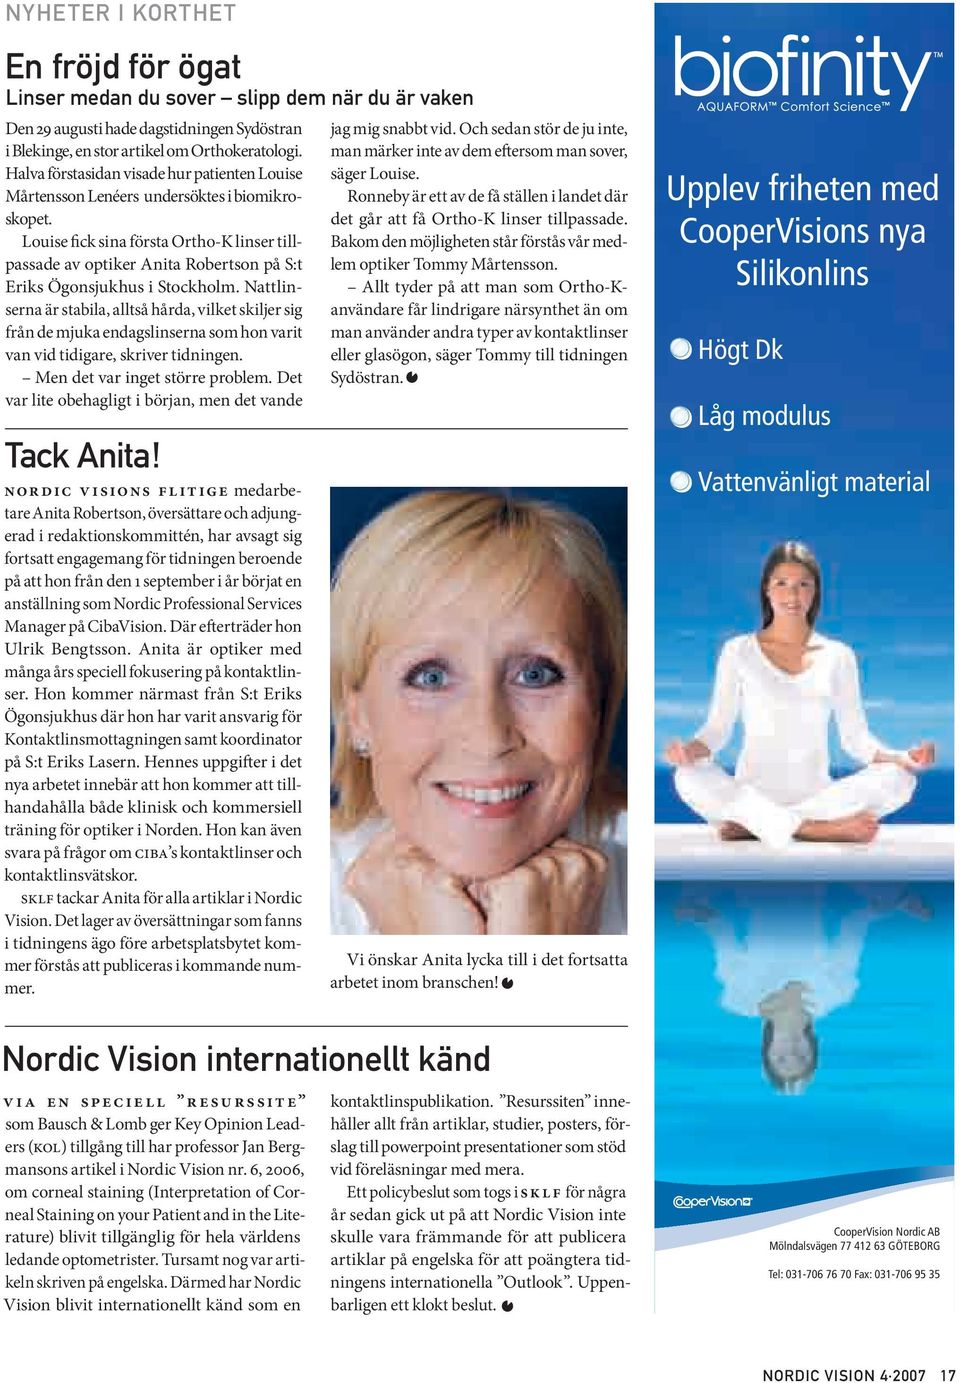 Louise fick sina första Ortho-K linser tillpassade av optiker Anita Robertson på S:t Eriks Ögonsjukhus i Stockholm.